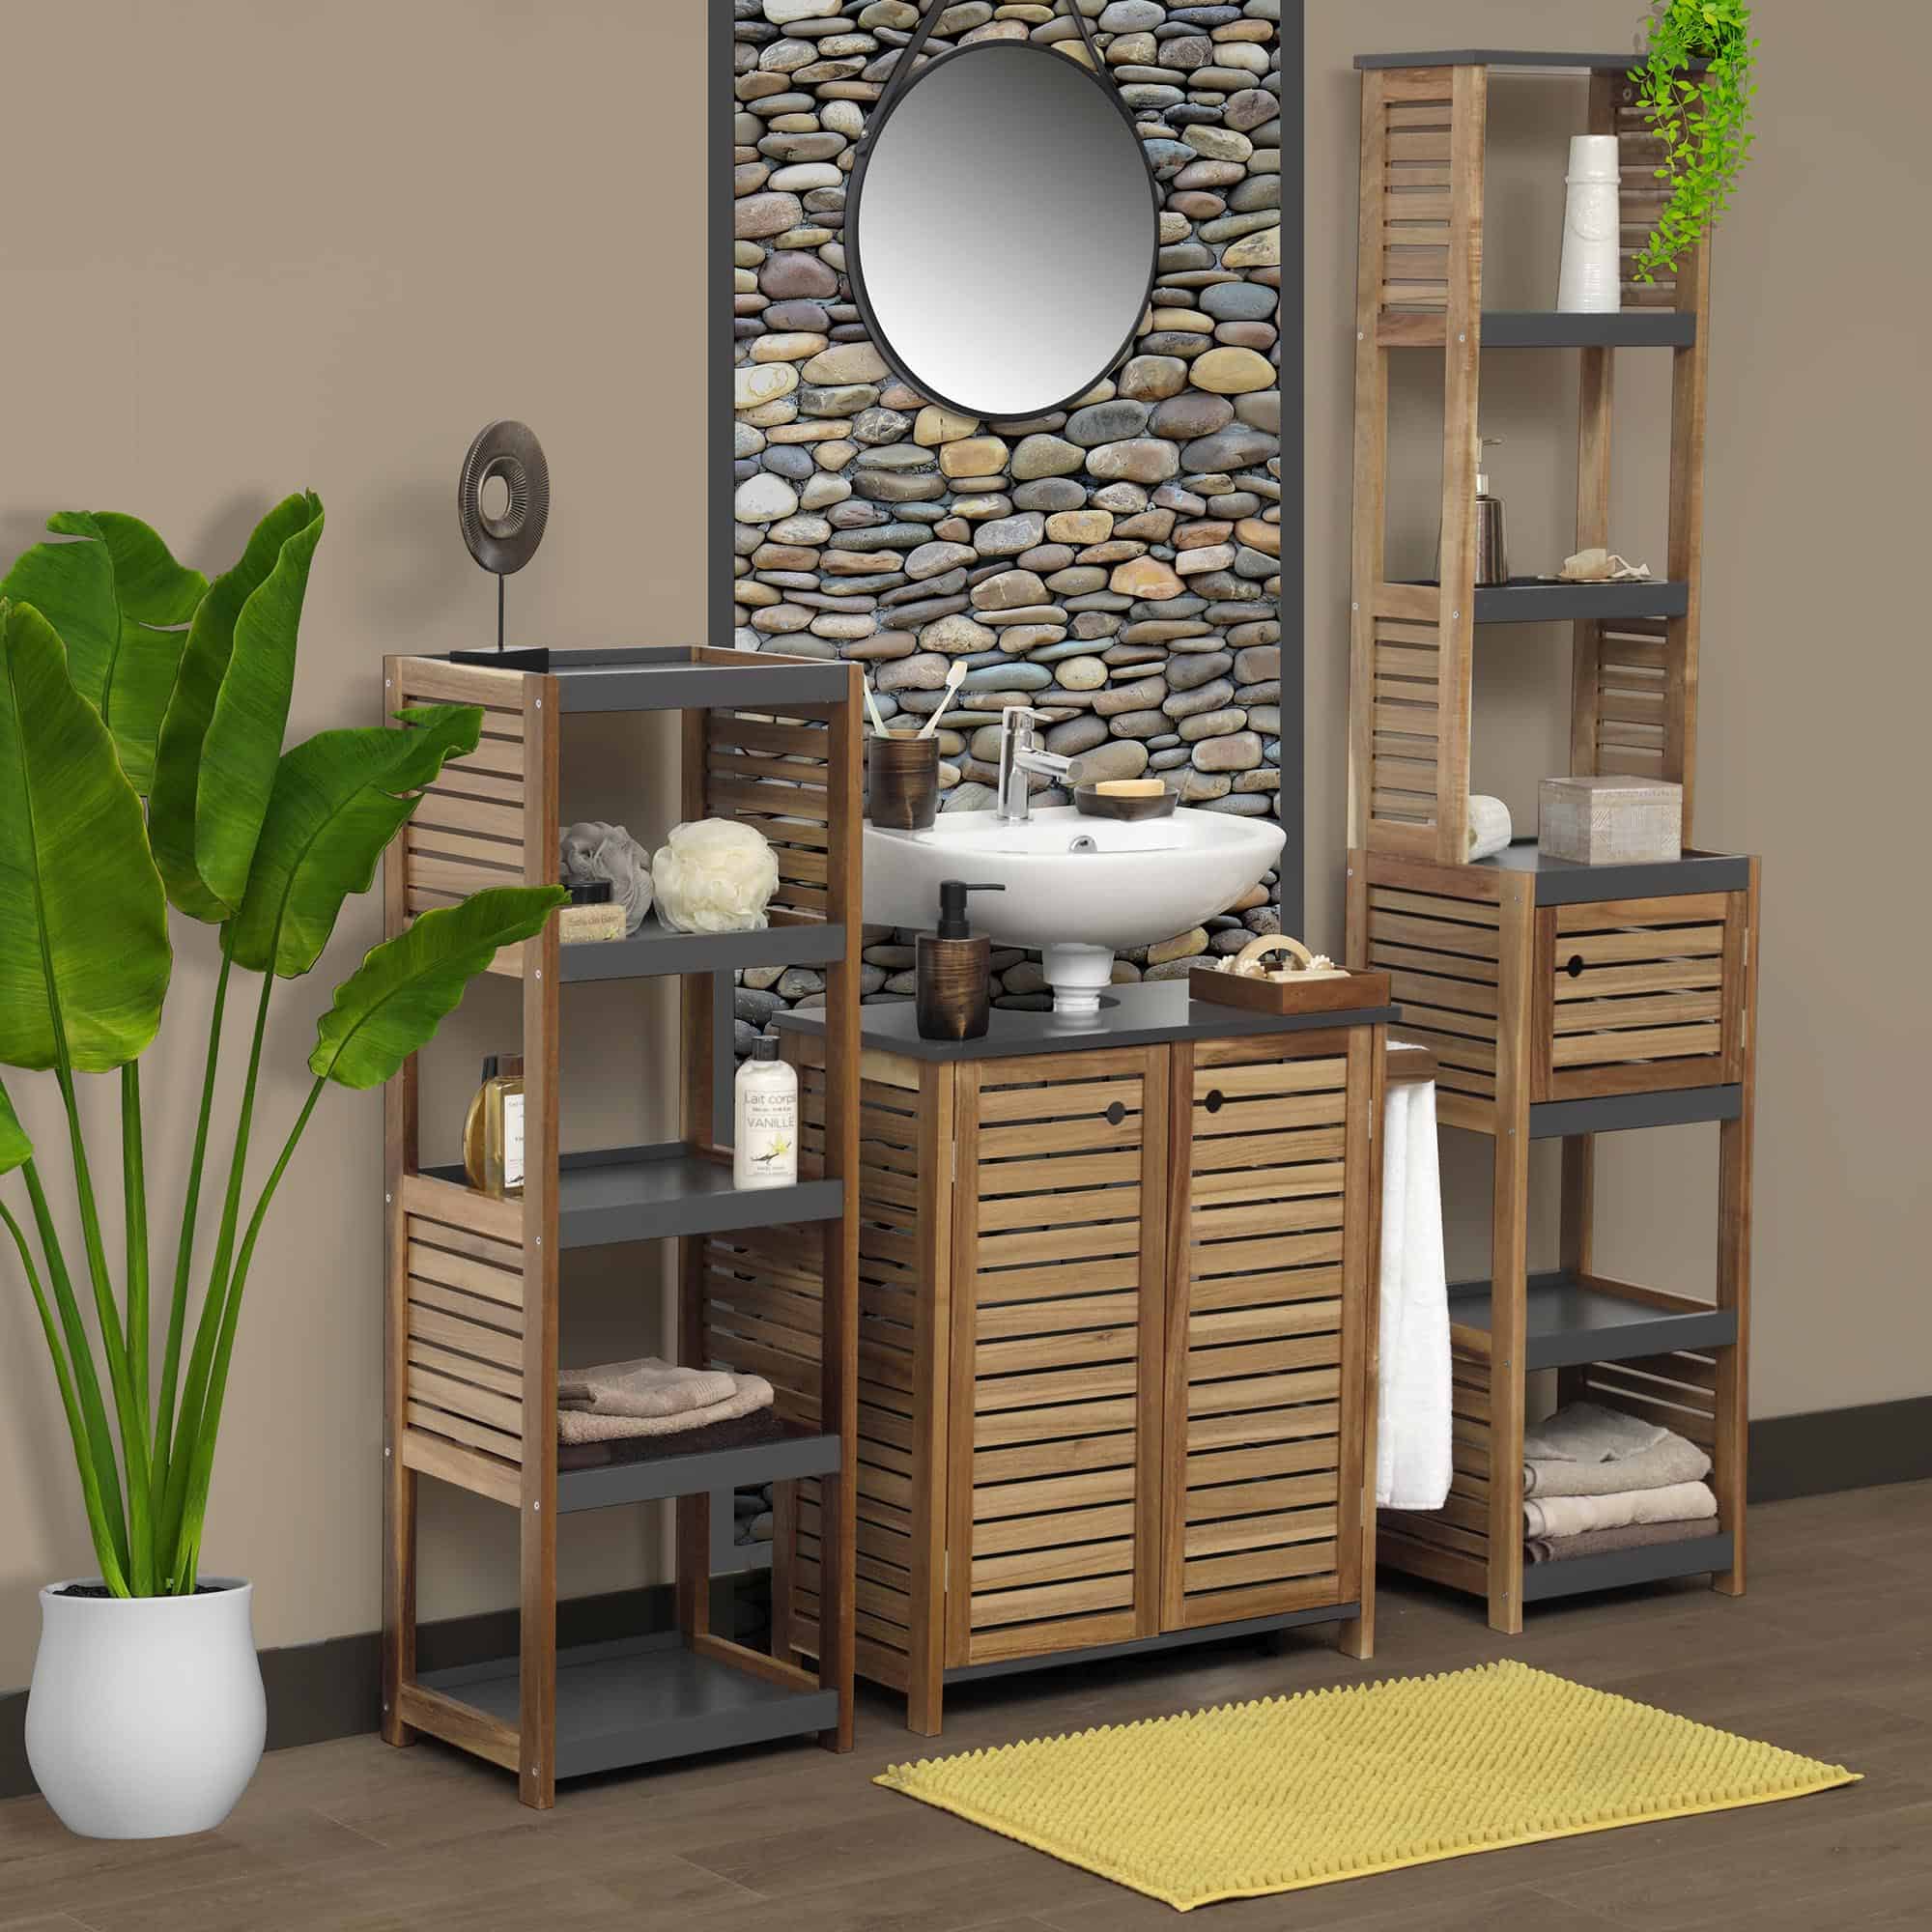 Freestanding Bath Linen Tower Cabinet Elements 1 Door 5 Shelves Wood Grey Acacia